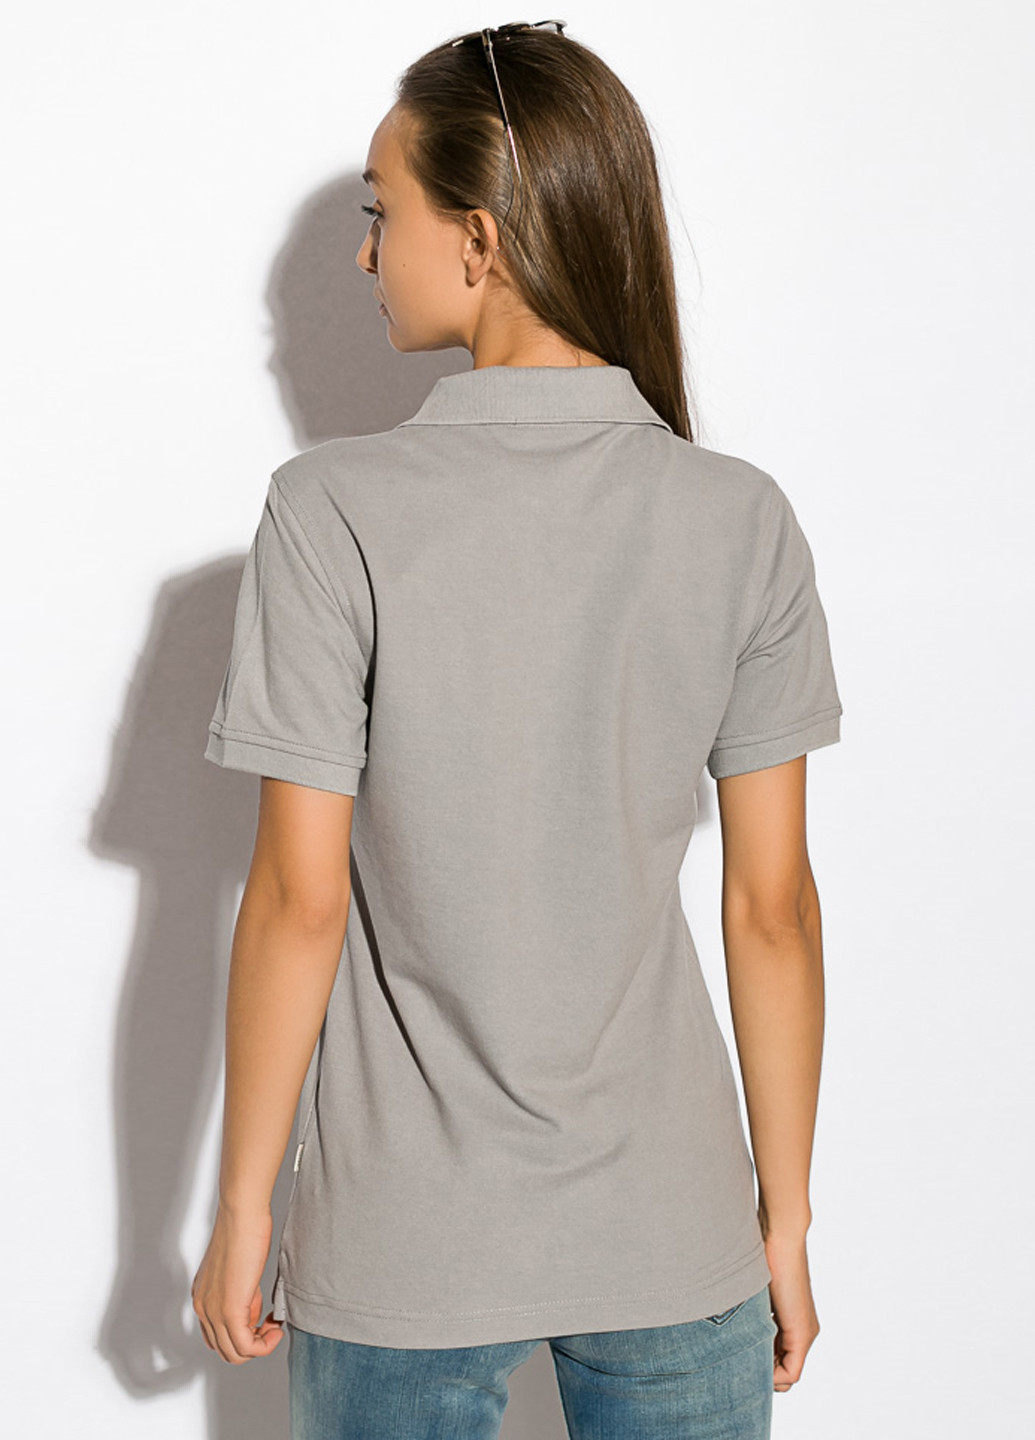 Светло-серая женская футболка-поло Time of Style однотонная